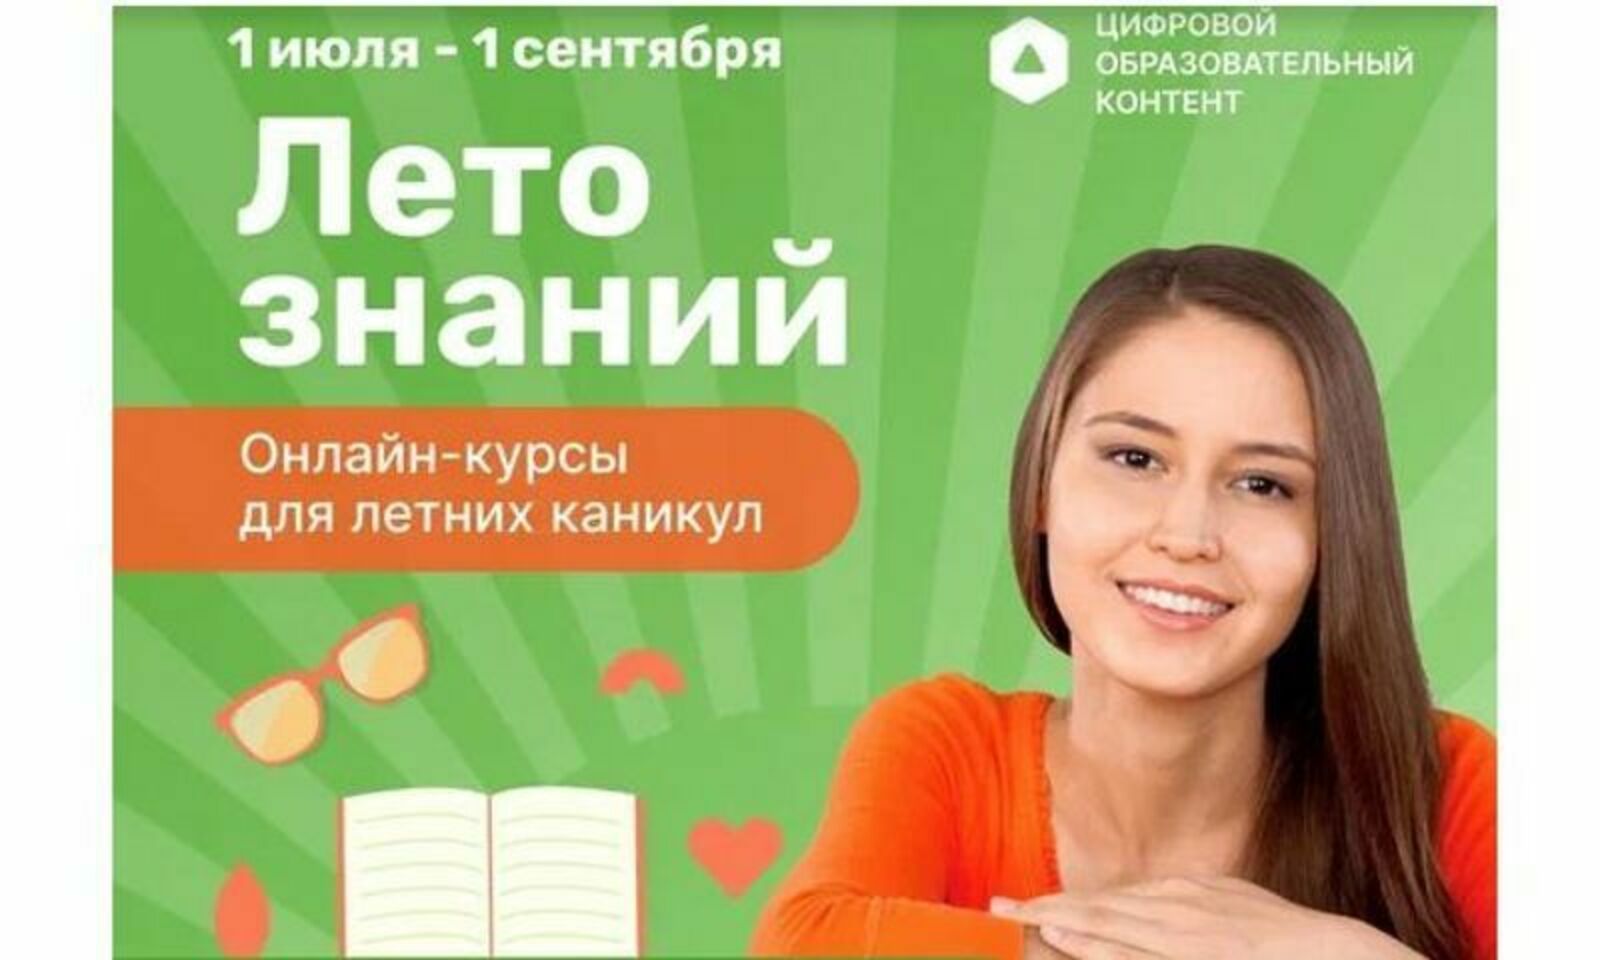 Школьники Башкирии могут бесплатно пройти онлайн-курсы спецпроекта «Лето знаний»